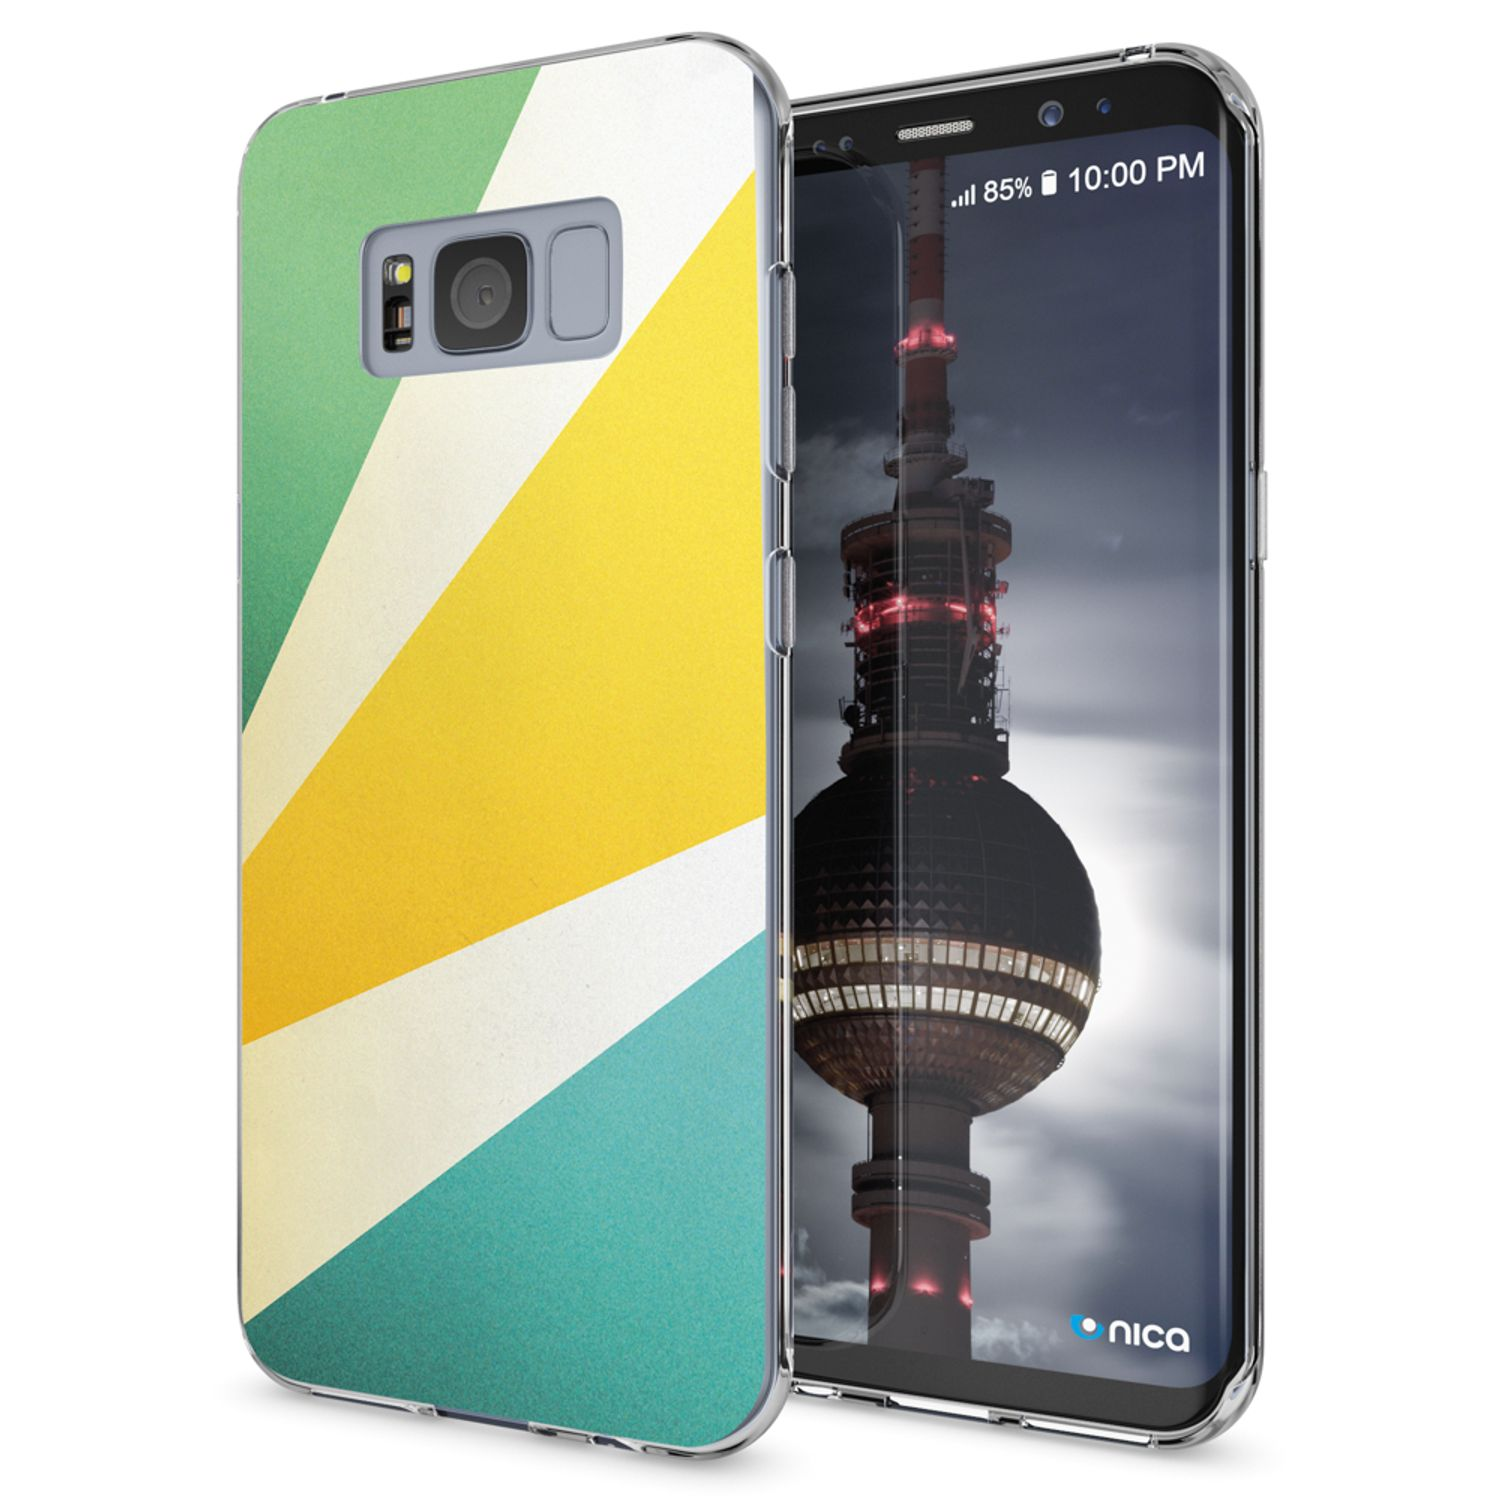 NALIA Motiv Silikon Galaxy S8, Samsung, Hülle, Backcover, Mehrfarbig